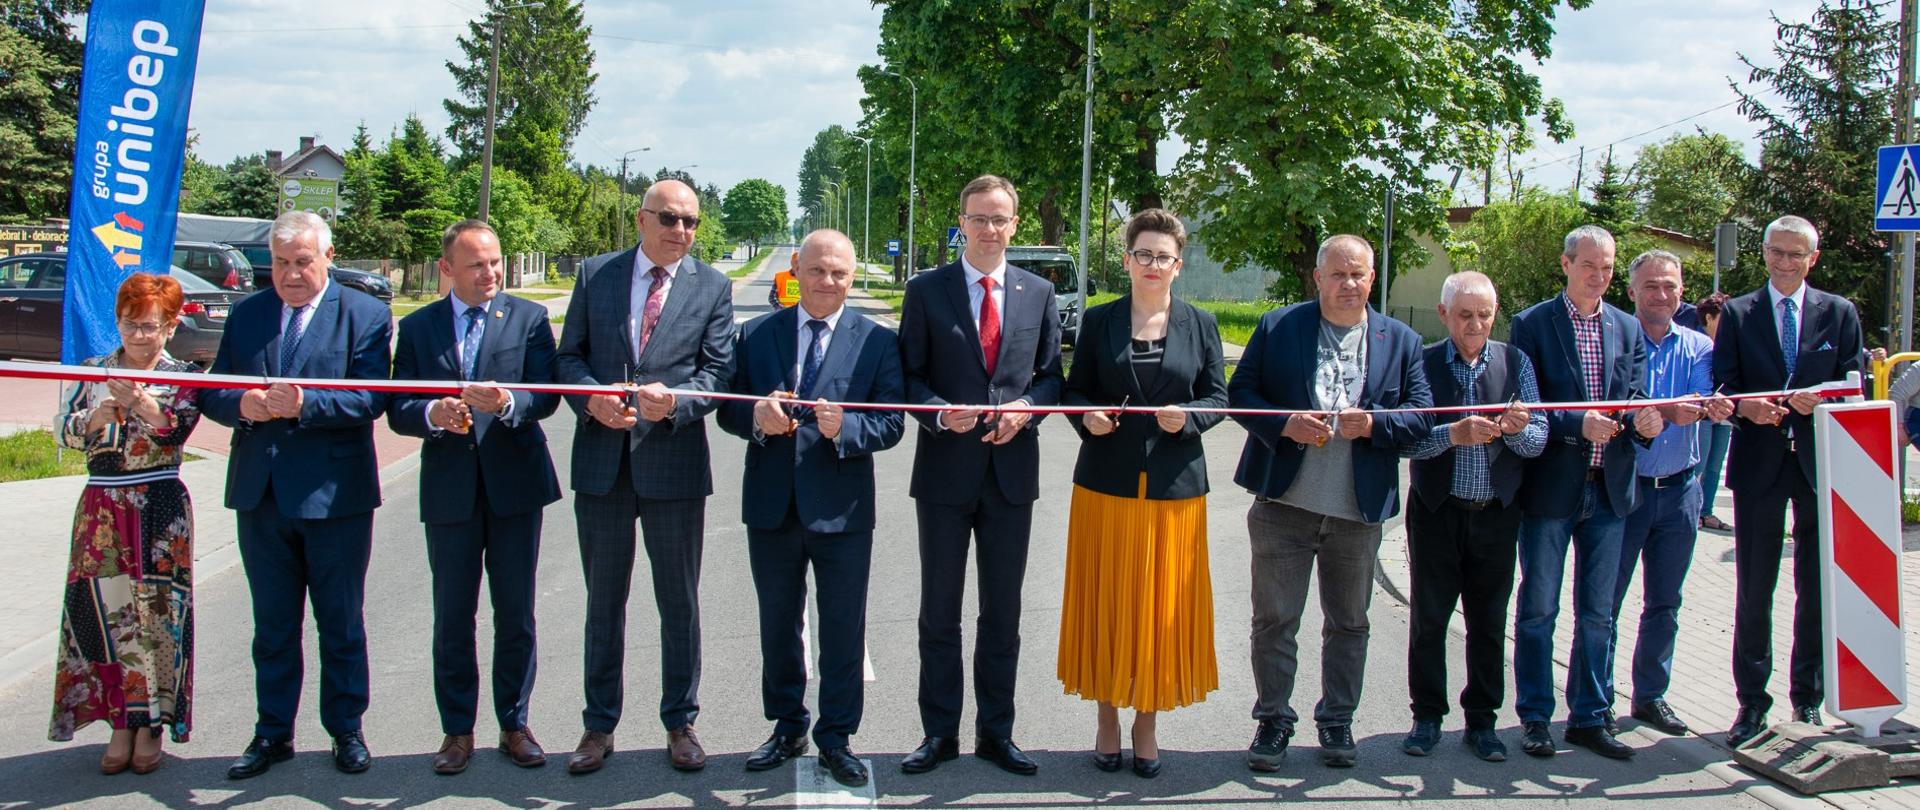 Ponad 1,2 mln zł z Rządowego Funduszu Rozwoju Dróg na inwestycję drogową w gminie Łomża